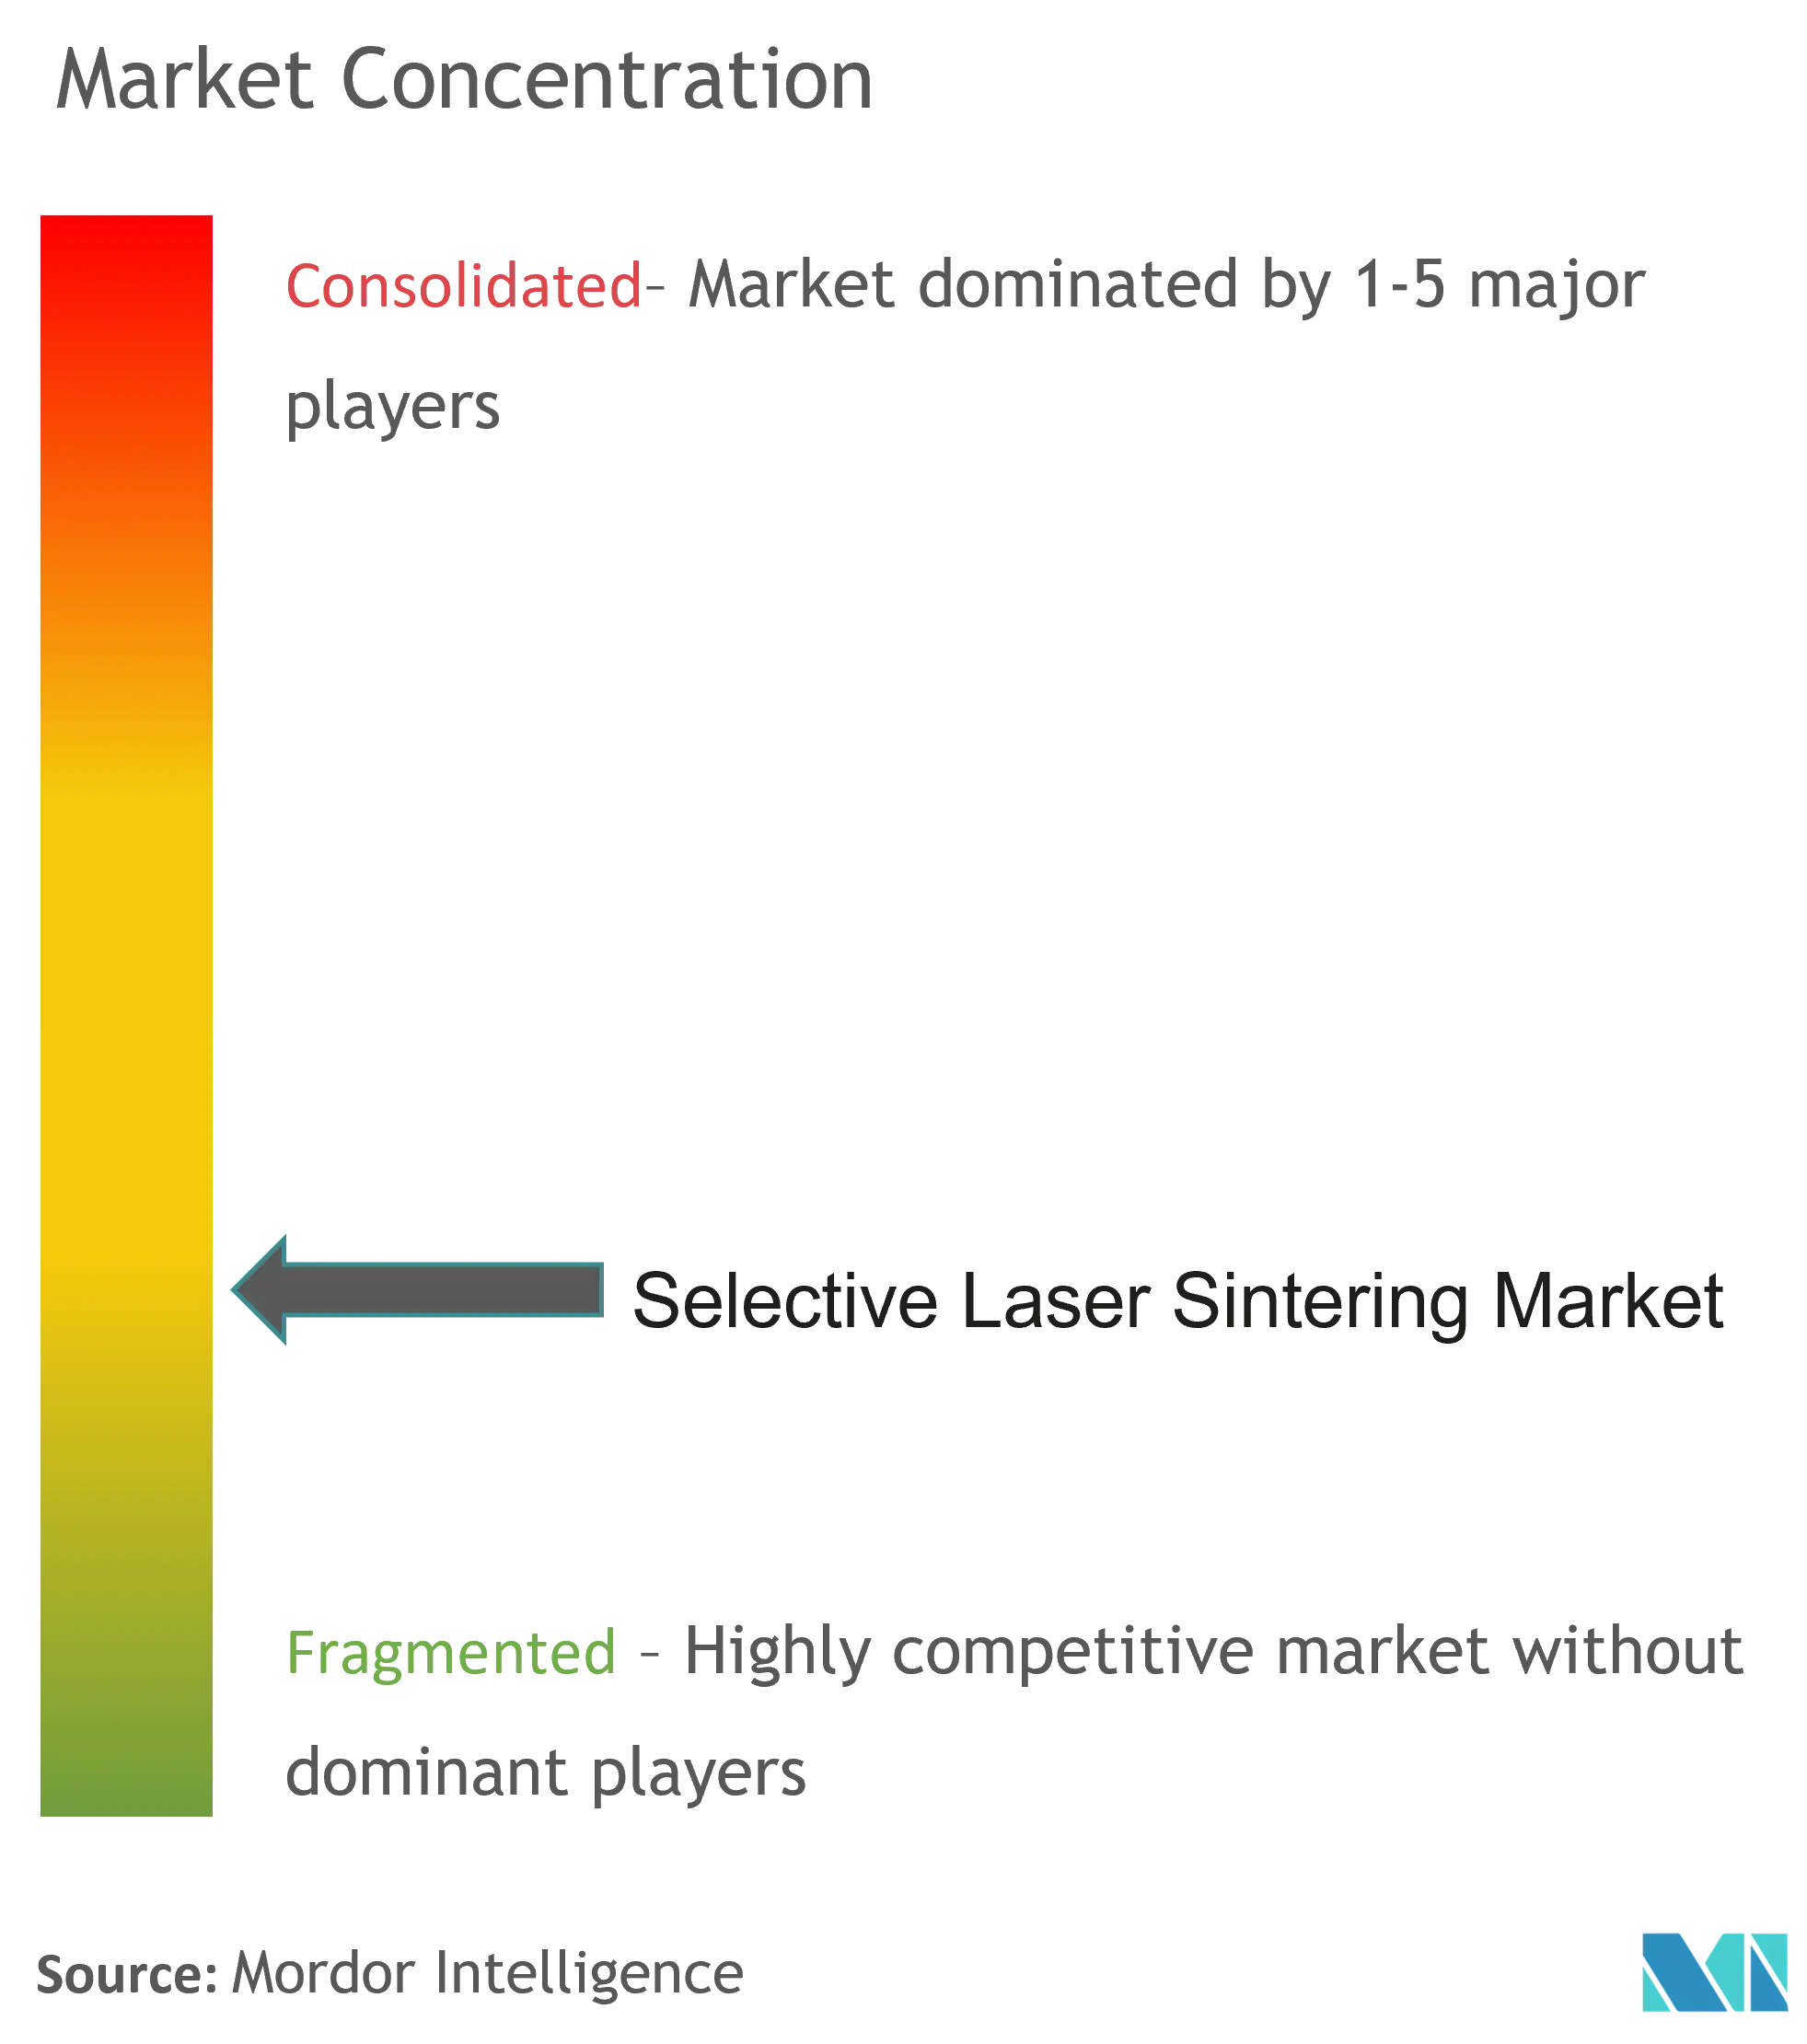 Selective Laser Sintering Market - Market Concentration.png